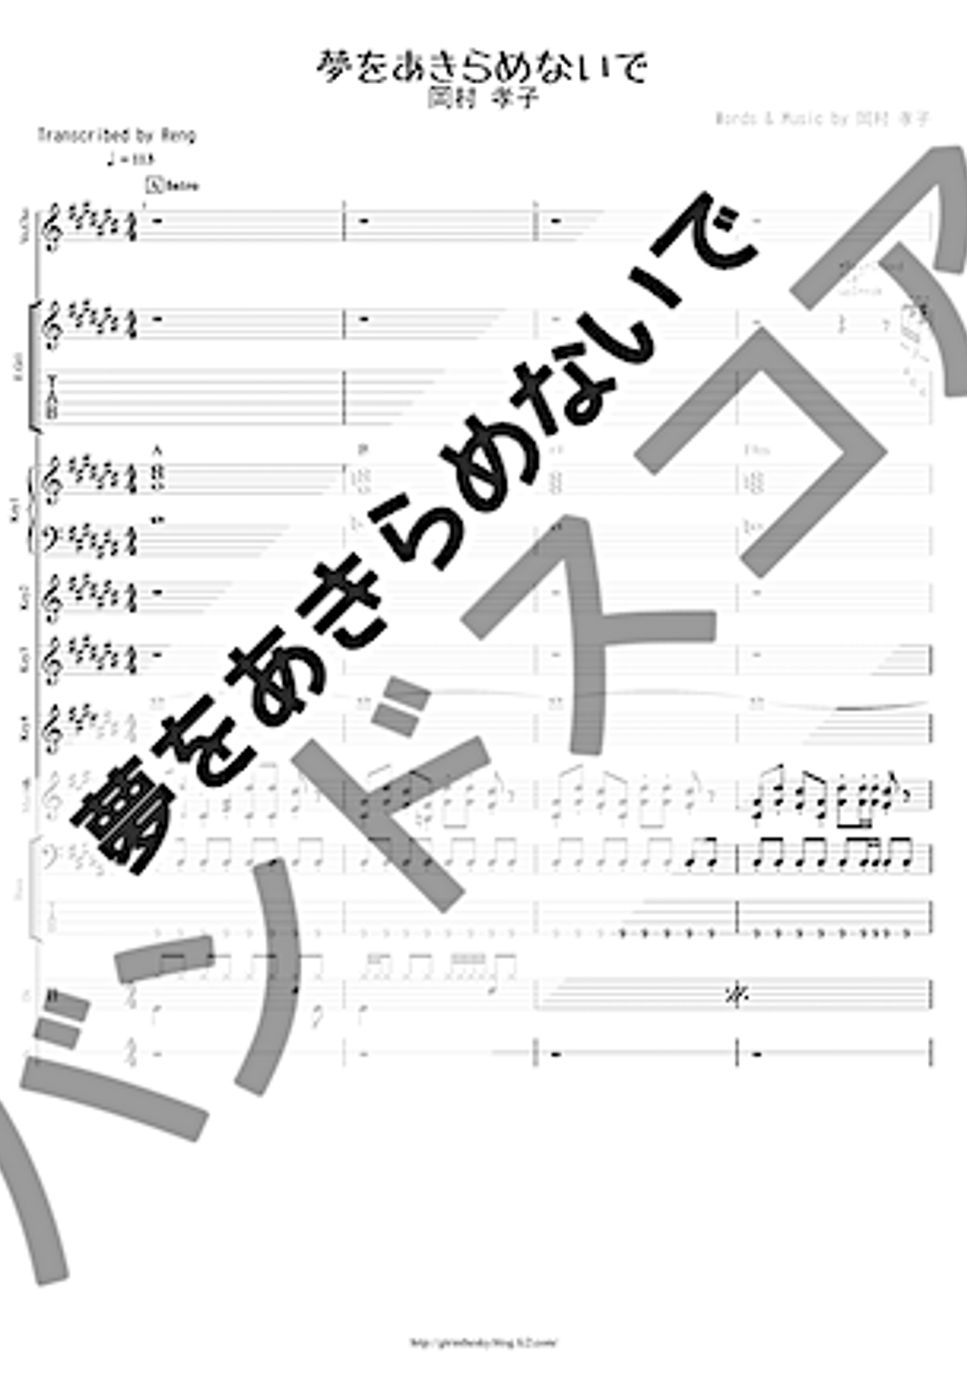 岡村 孝子 - 夢をあきらめないで (バンドスコア/歌詞/コード付き/TAB譜/映画『逆境ナイン』OST) by Reng